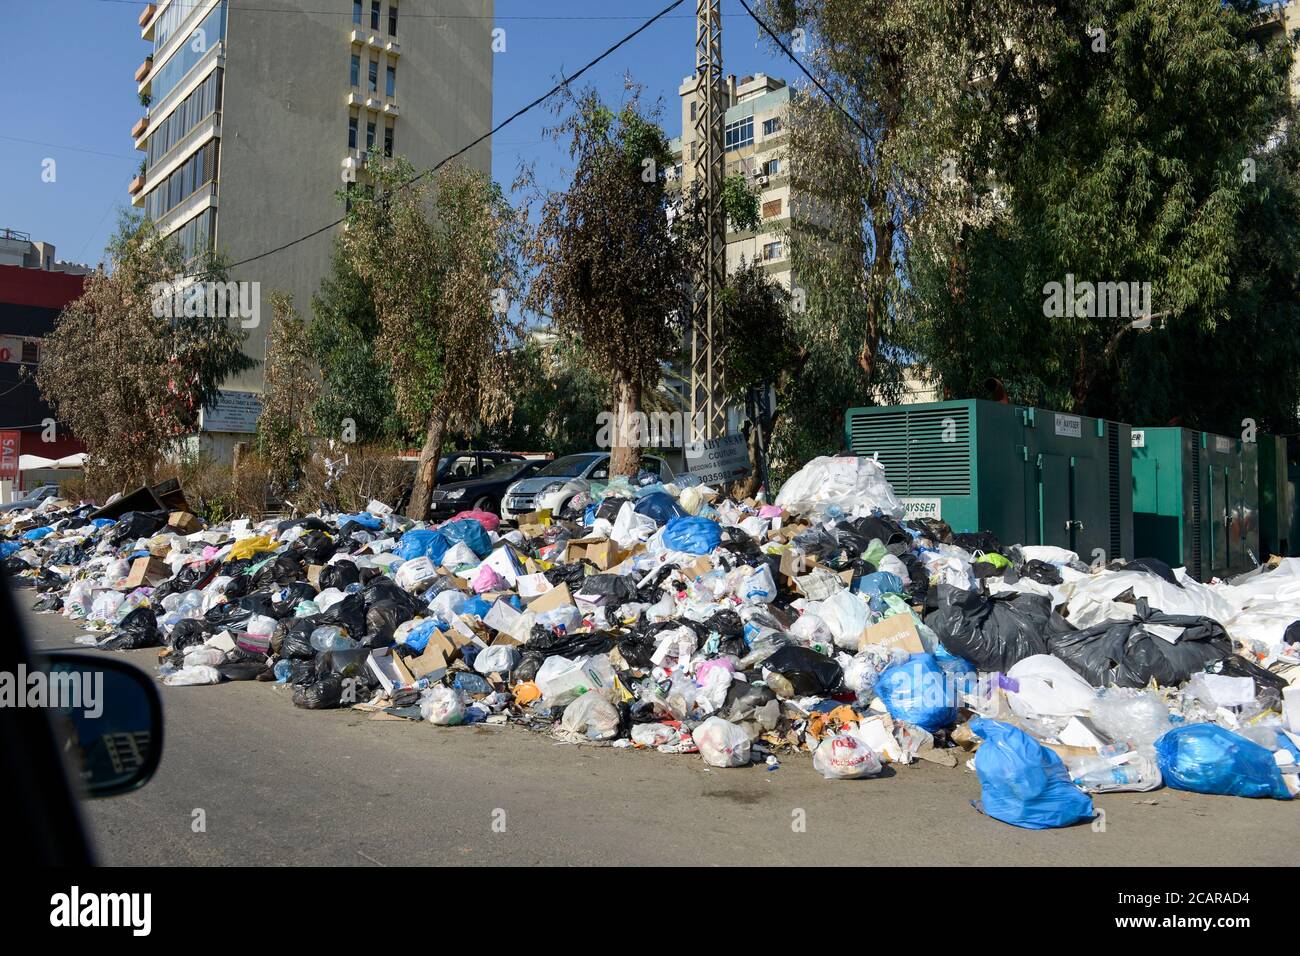 LIBAN, Beyrouth, pendant 3 semaines les déchets ne sont pas collectés / LIBANON, Beyrouth, seit 3 Monaten wird der Müll nicht abgeholt Banque D'Images